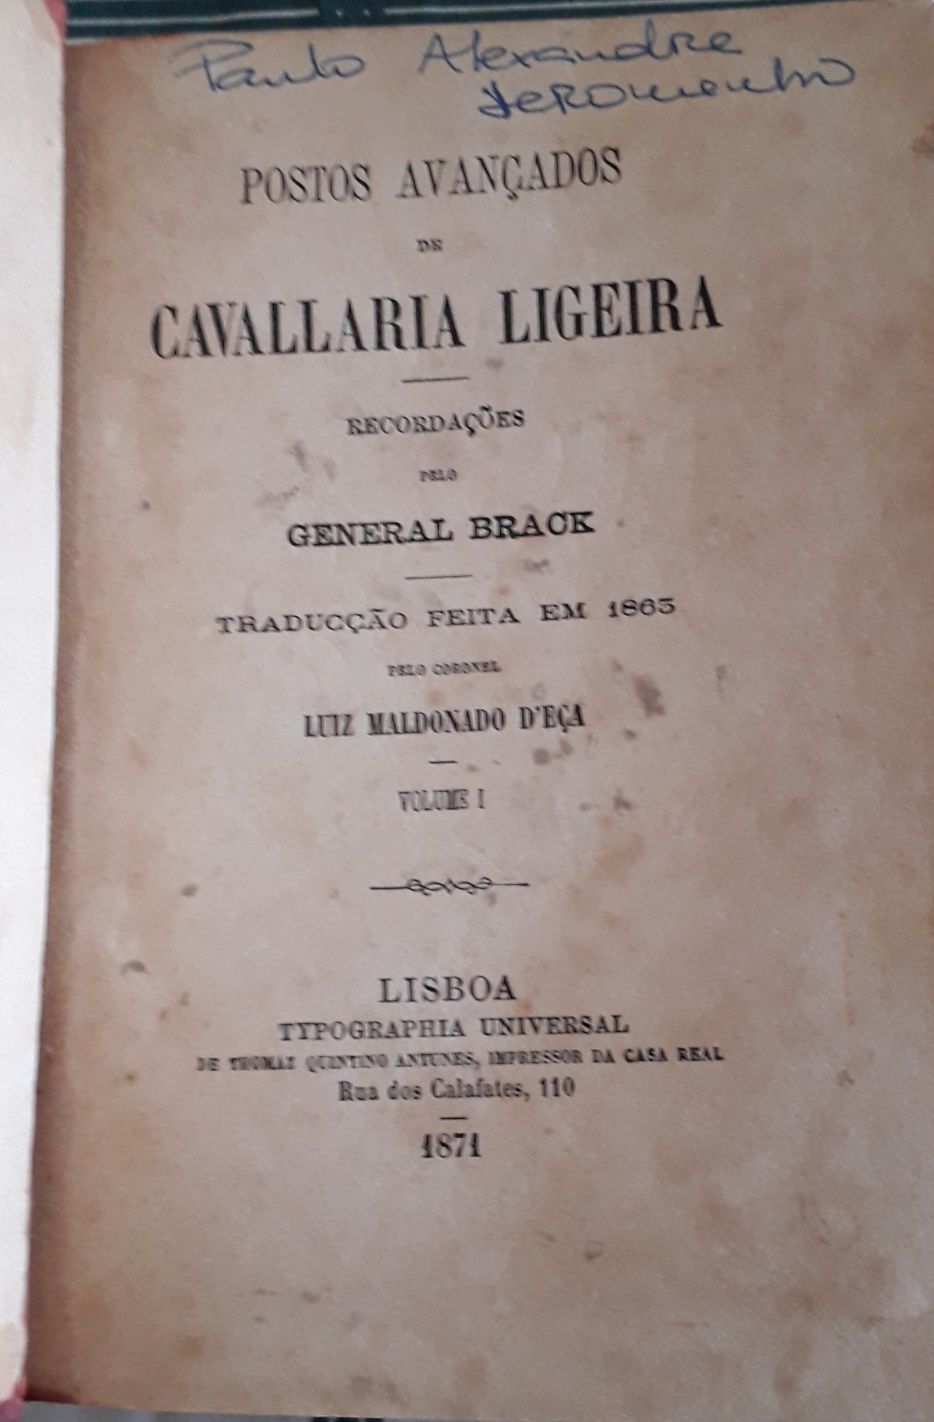 Postos Avançados de Cavallaria Ligeira (1871 vol I)